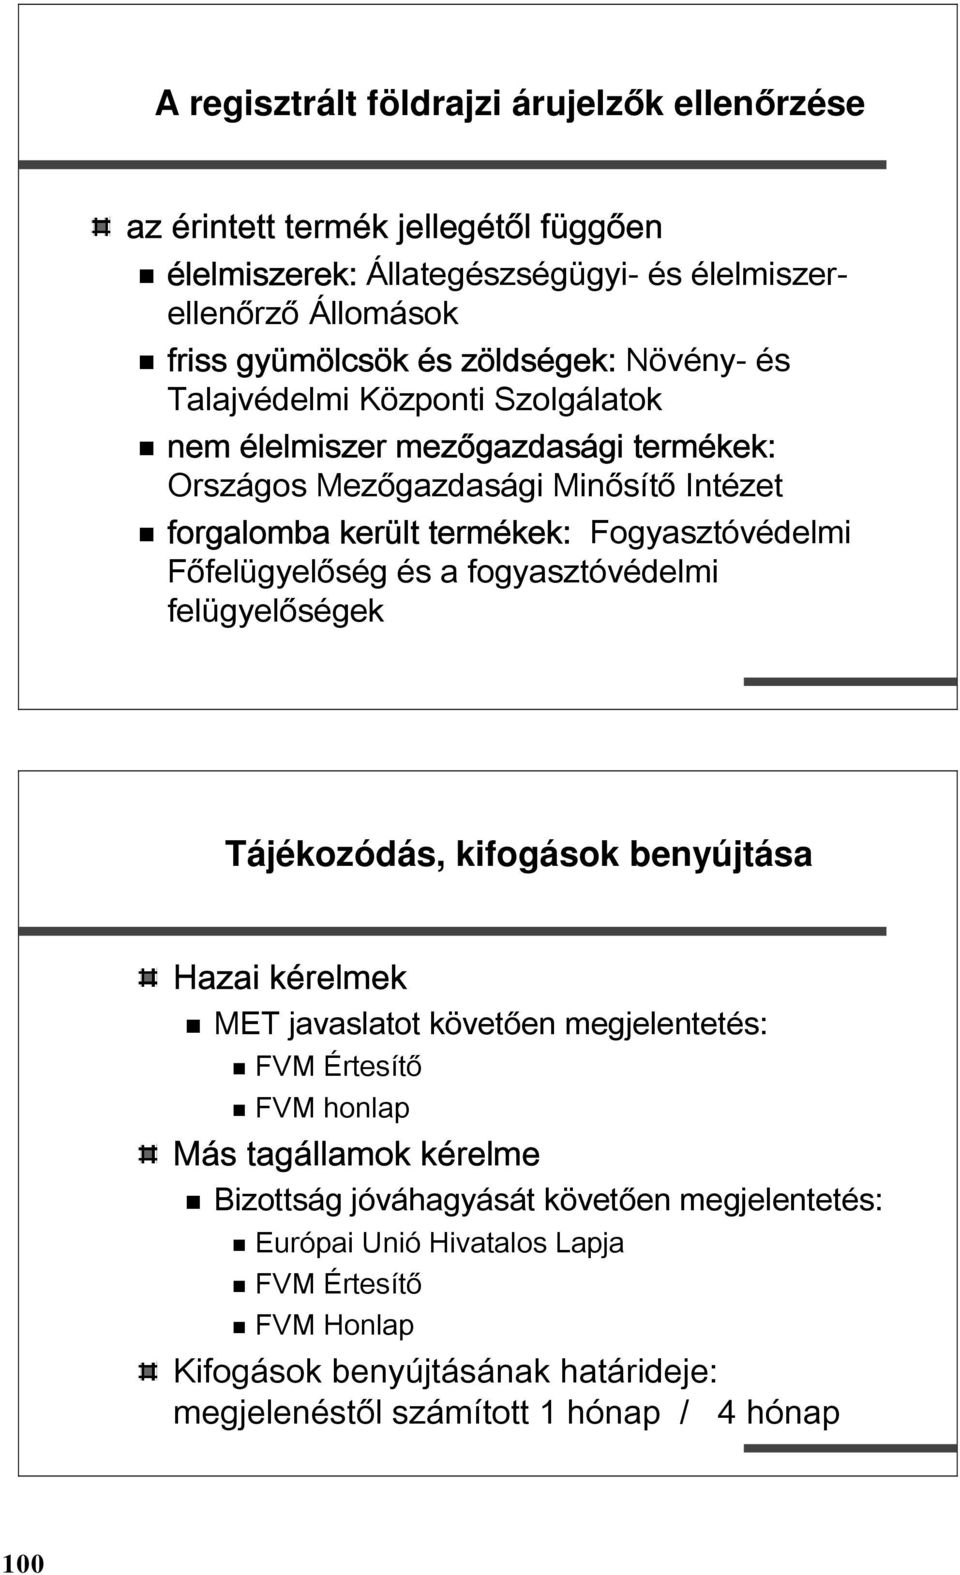 Főfelügyelőség és a fogyasztóvédelmi felügyelőségek Tájékozódás, kifogások benyújtása Hazai kérelmek MET javaslatot követően megjelentetés: FVM Értesítő FVM honlap Más tagállamok